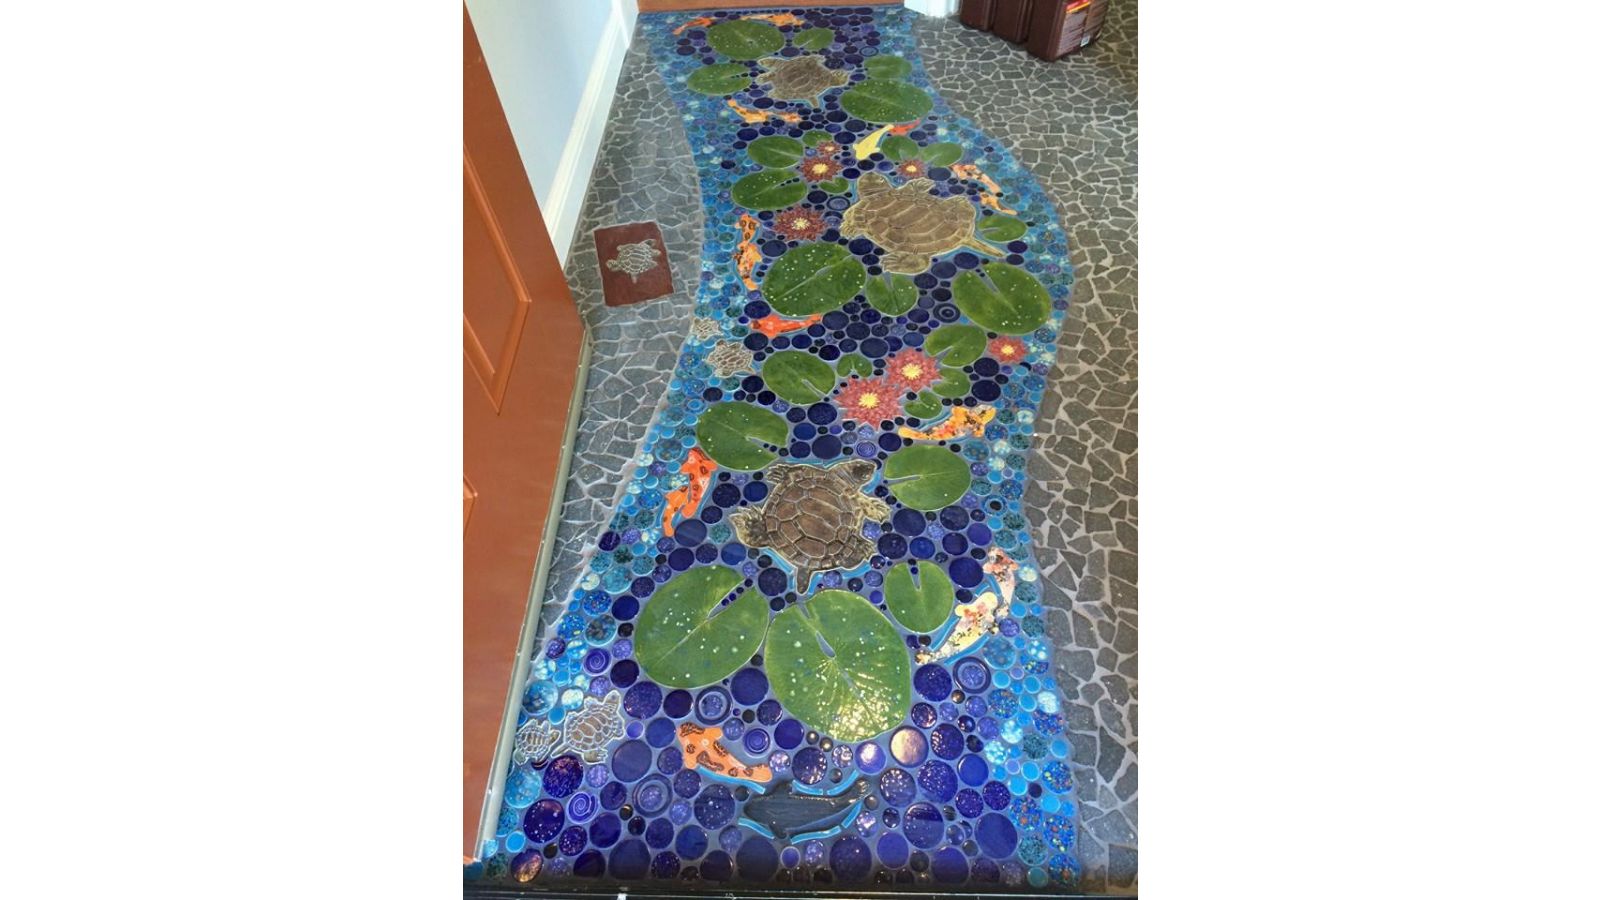 Turtle stream; handmade mosaic tile floor